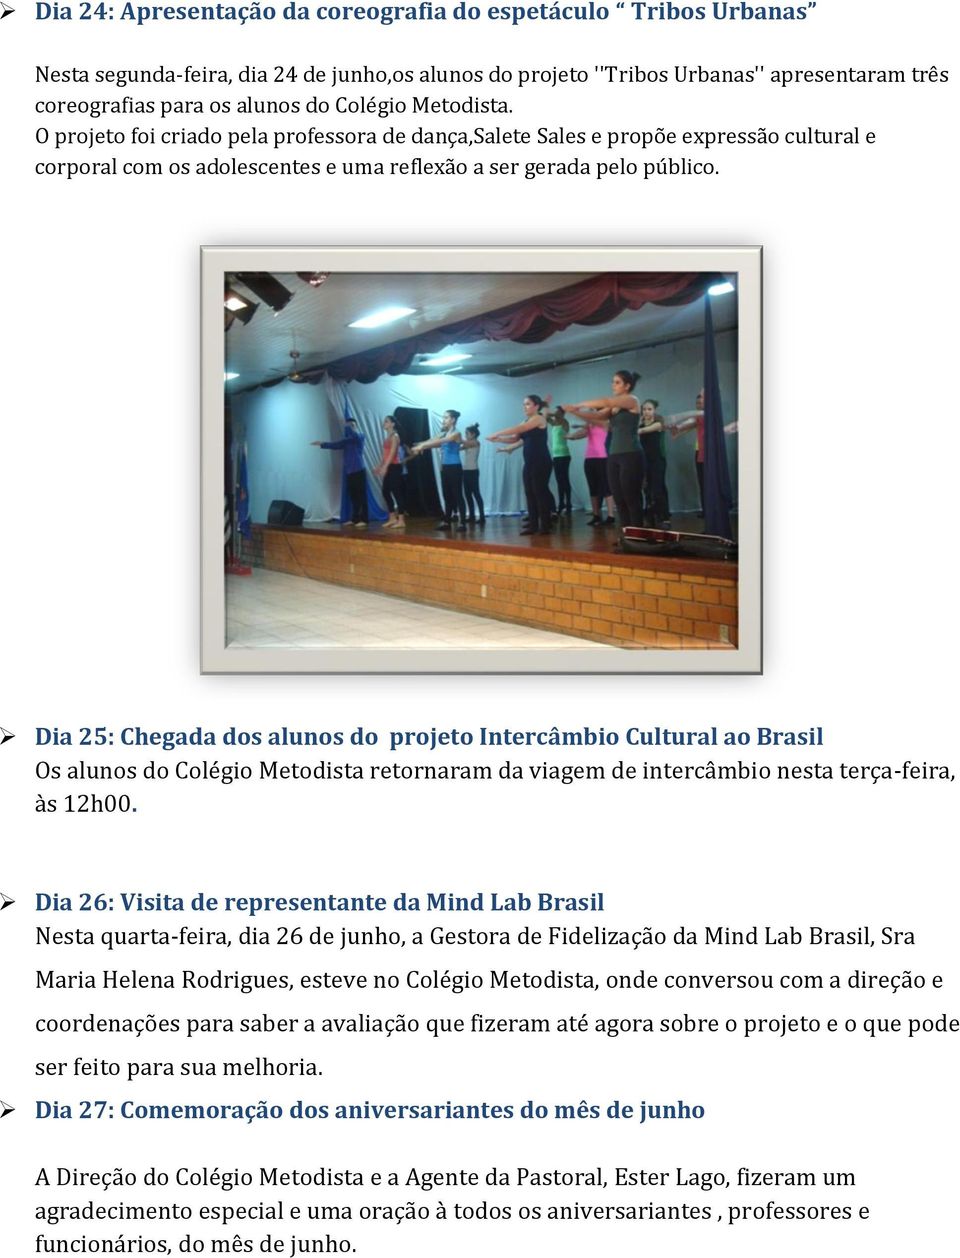 Dia 25: Chegada dos alunos do projeto Intercâmbio Cultural ao Brasil Os alunos do Colégio Metodista retornaram da viagem de intercâmbio nesta terça-feira, às 12h00.